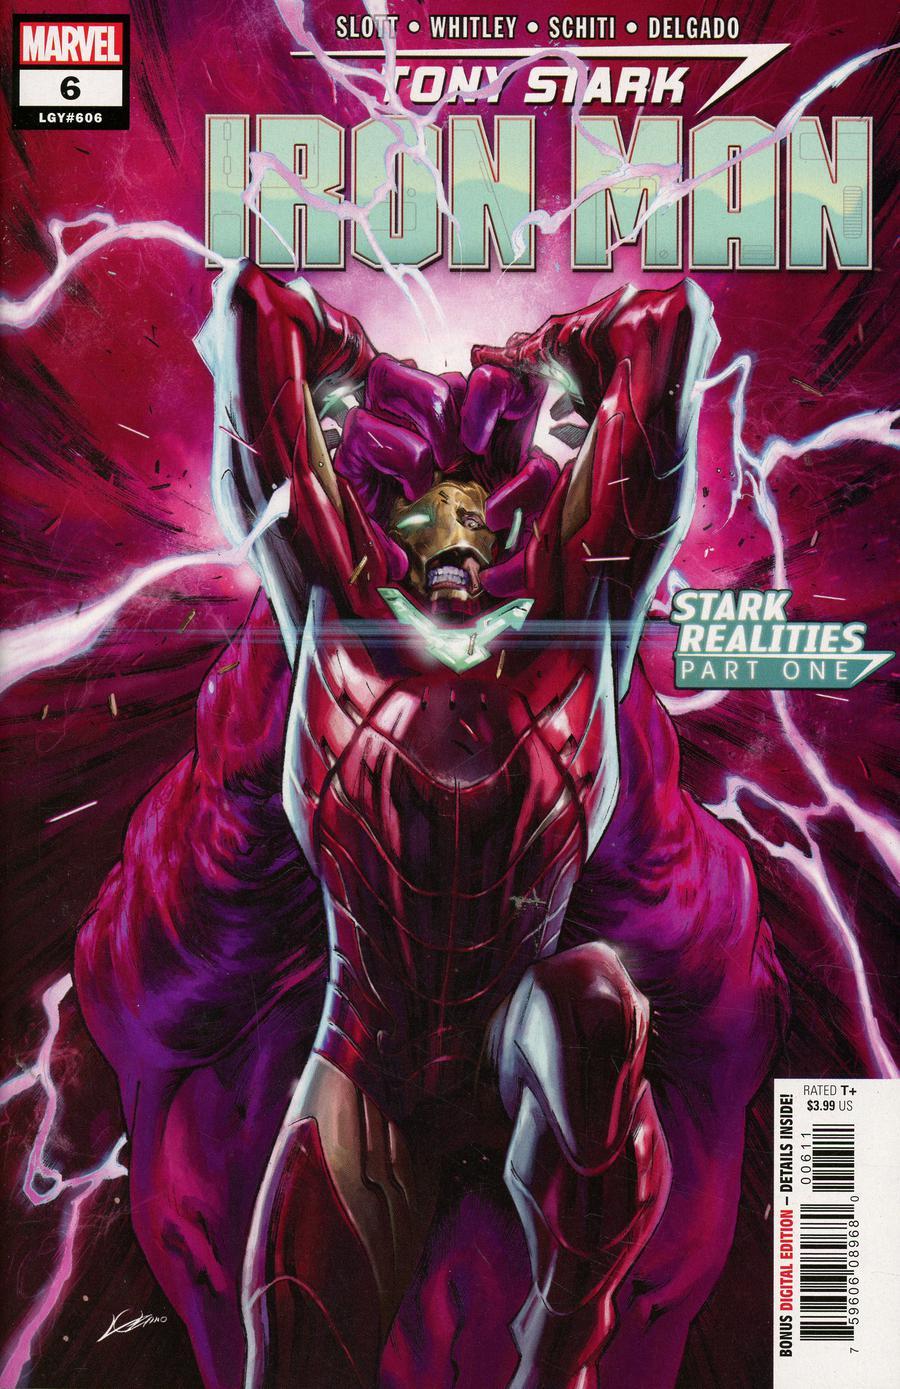 Tony Stark Iron Man Vol. 1 #6